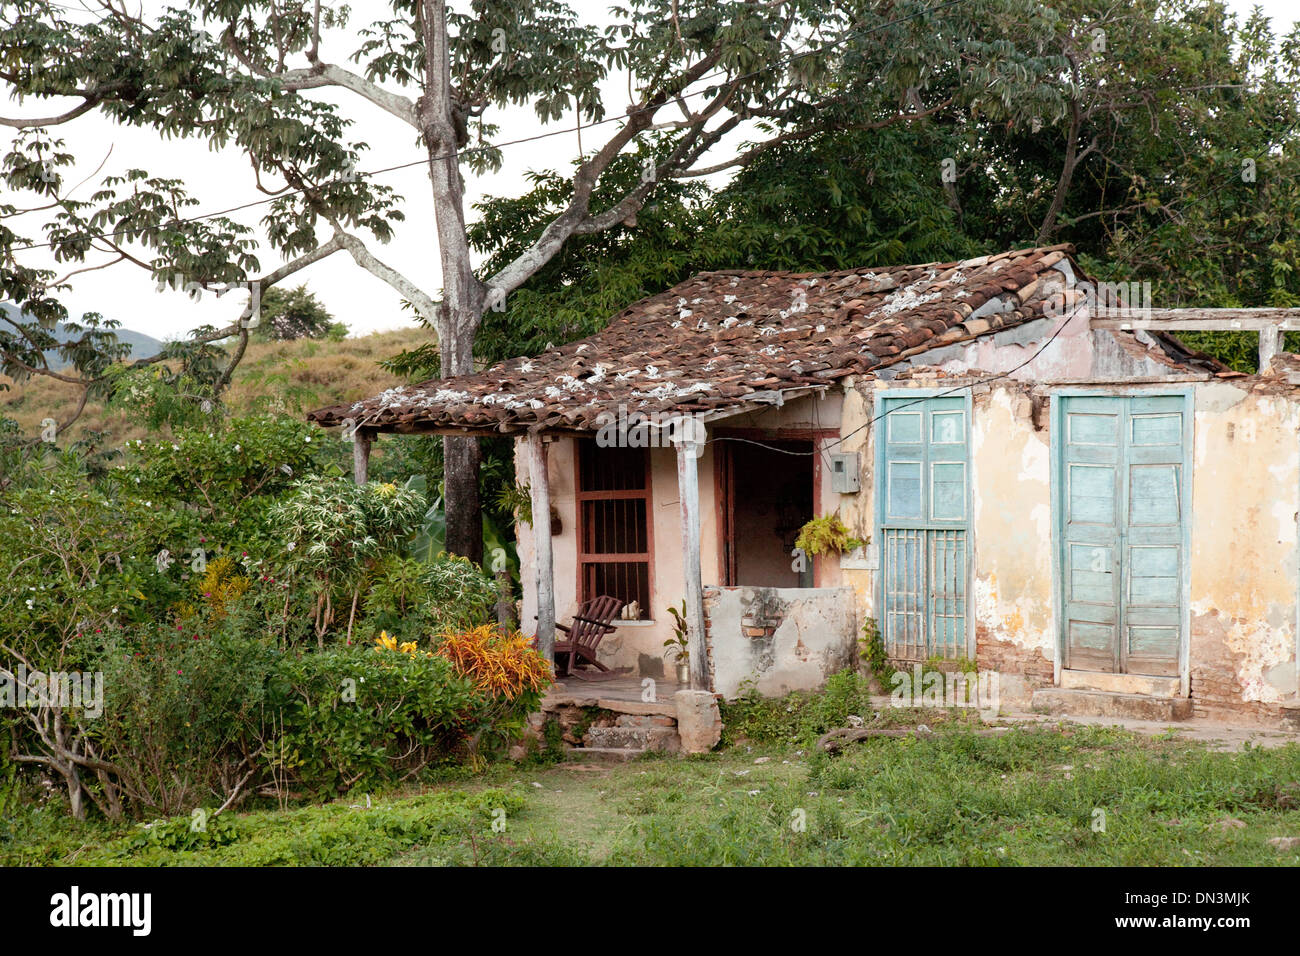 Maison de Cuba; UNE maison à Trinité, Cuba, Caraïbes, Amérique latine, reflétant la pauvreté locale Banque D'Images